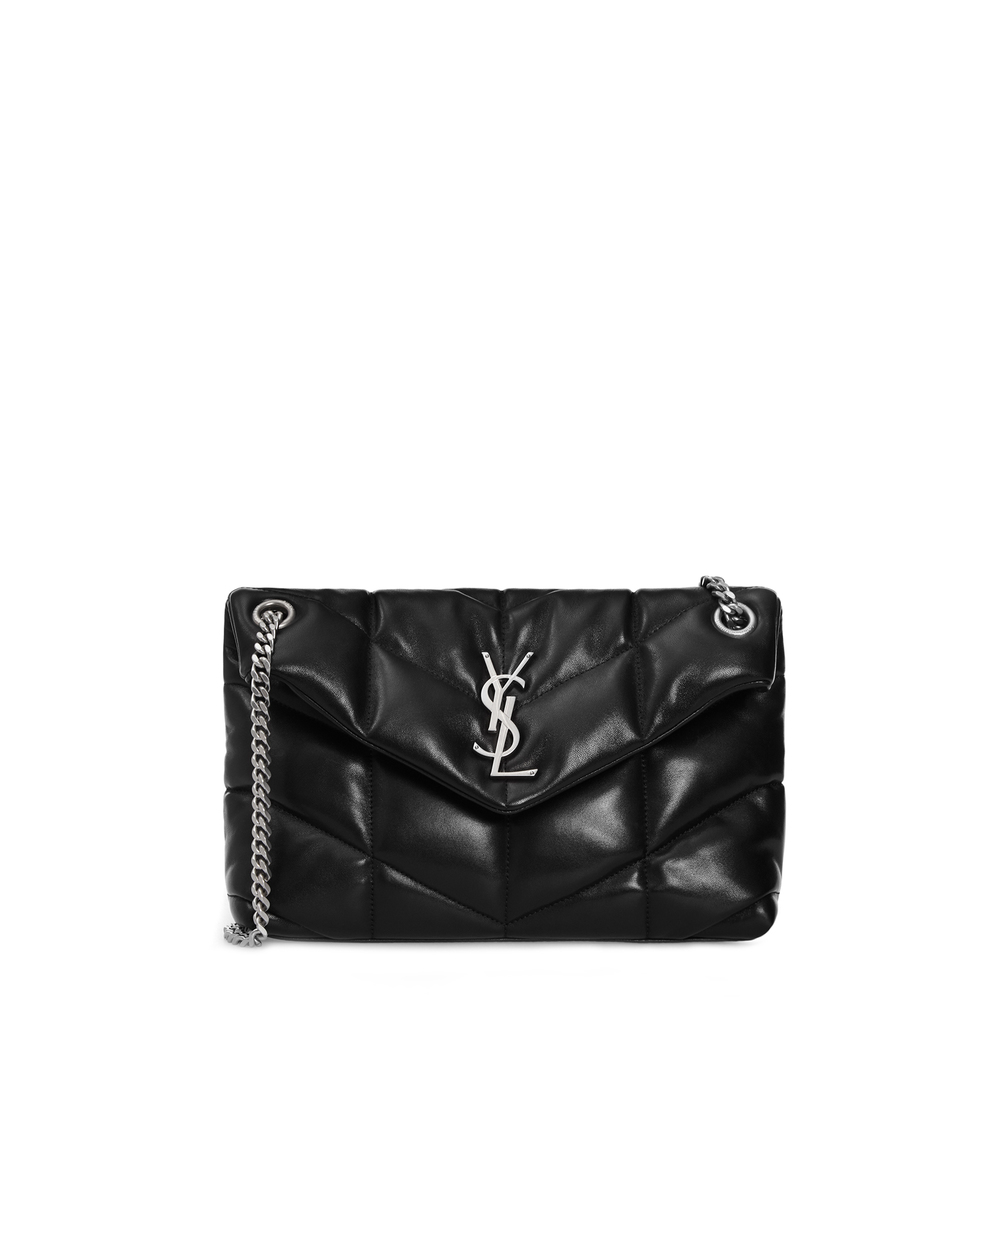 Кожаная сумка Loulou Saint Laurent 577476-1EL00, черный цвет • Купить в интернет-магазине Kameron